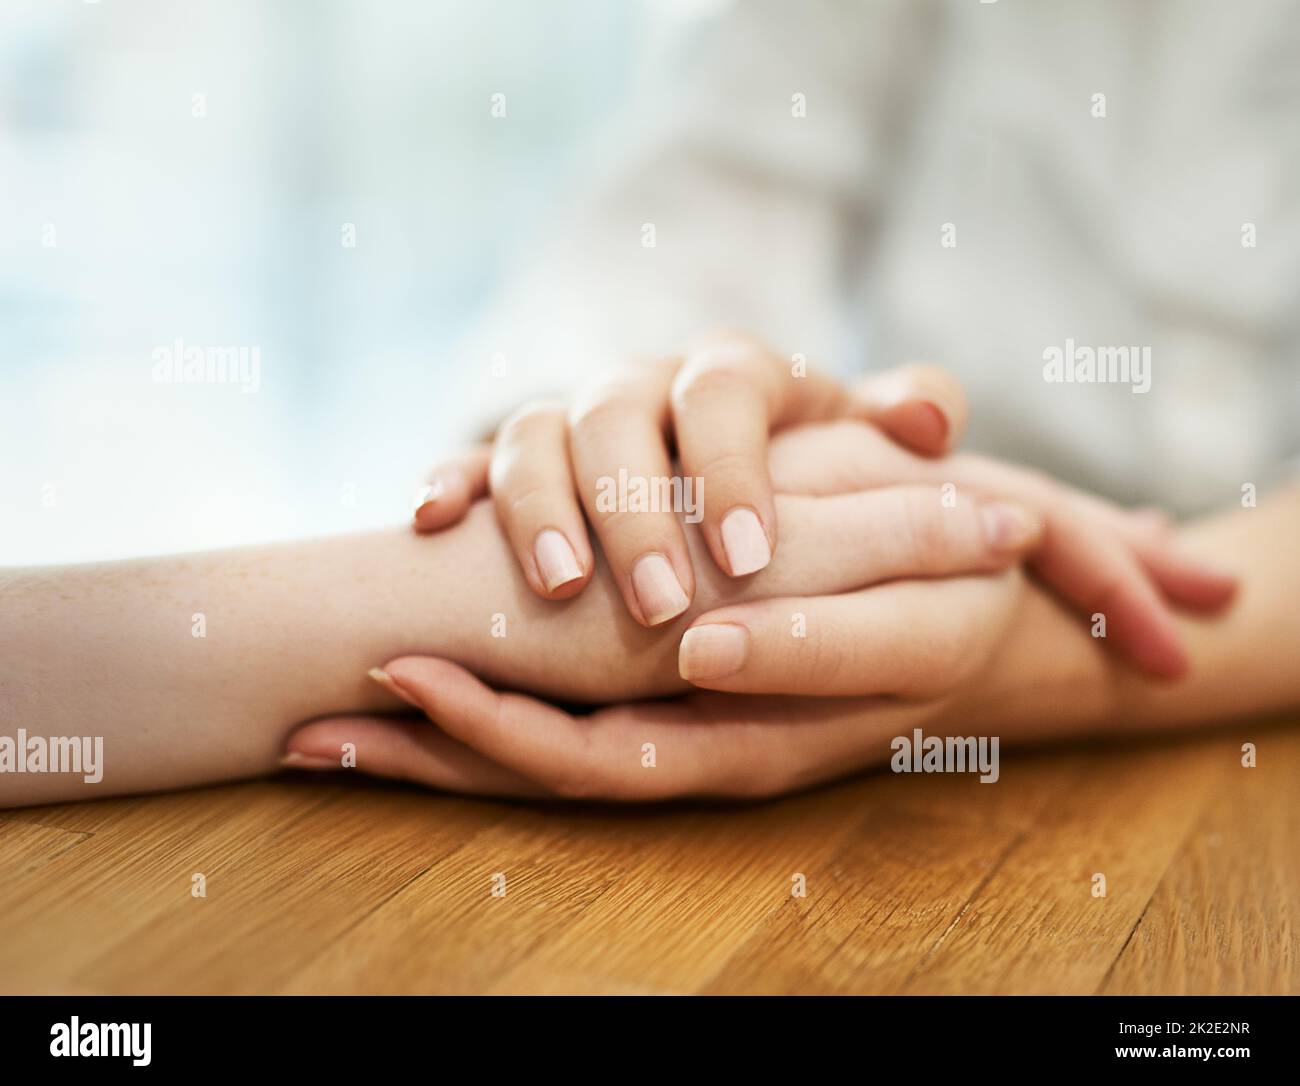 Maintien et confort. Photo de deux personnes tenant les mains confortablement. Banque D'Images